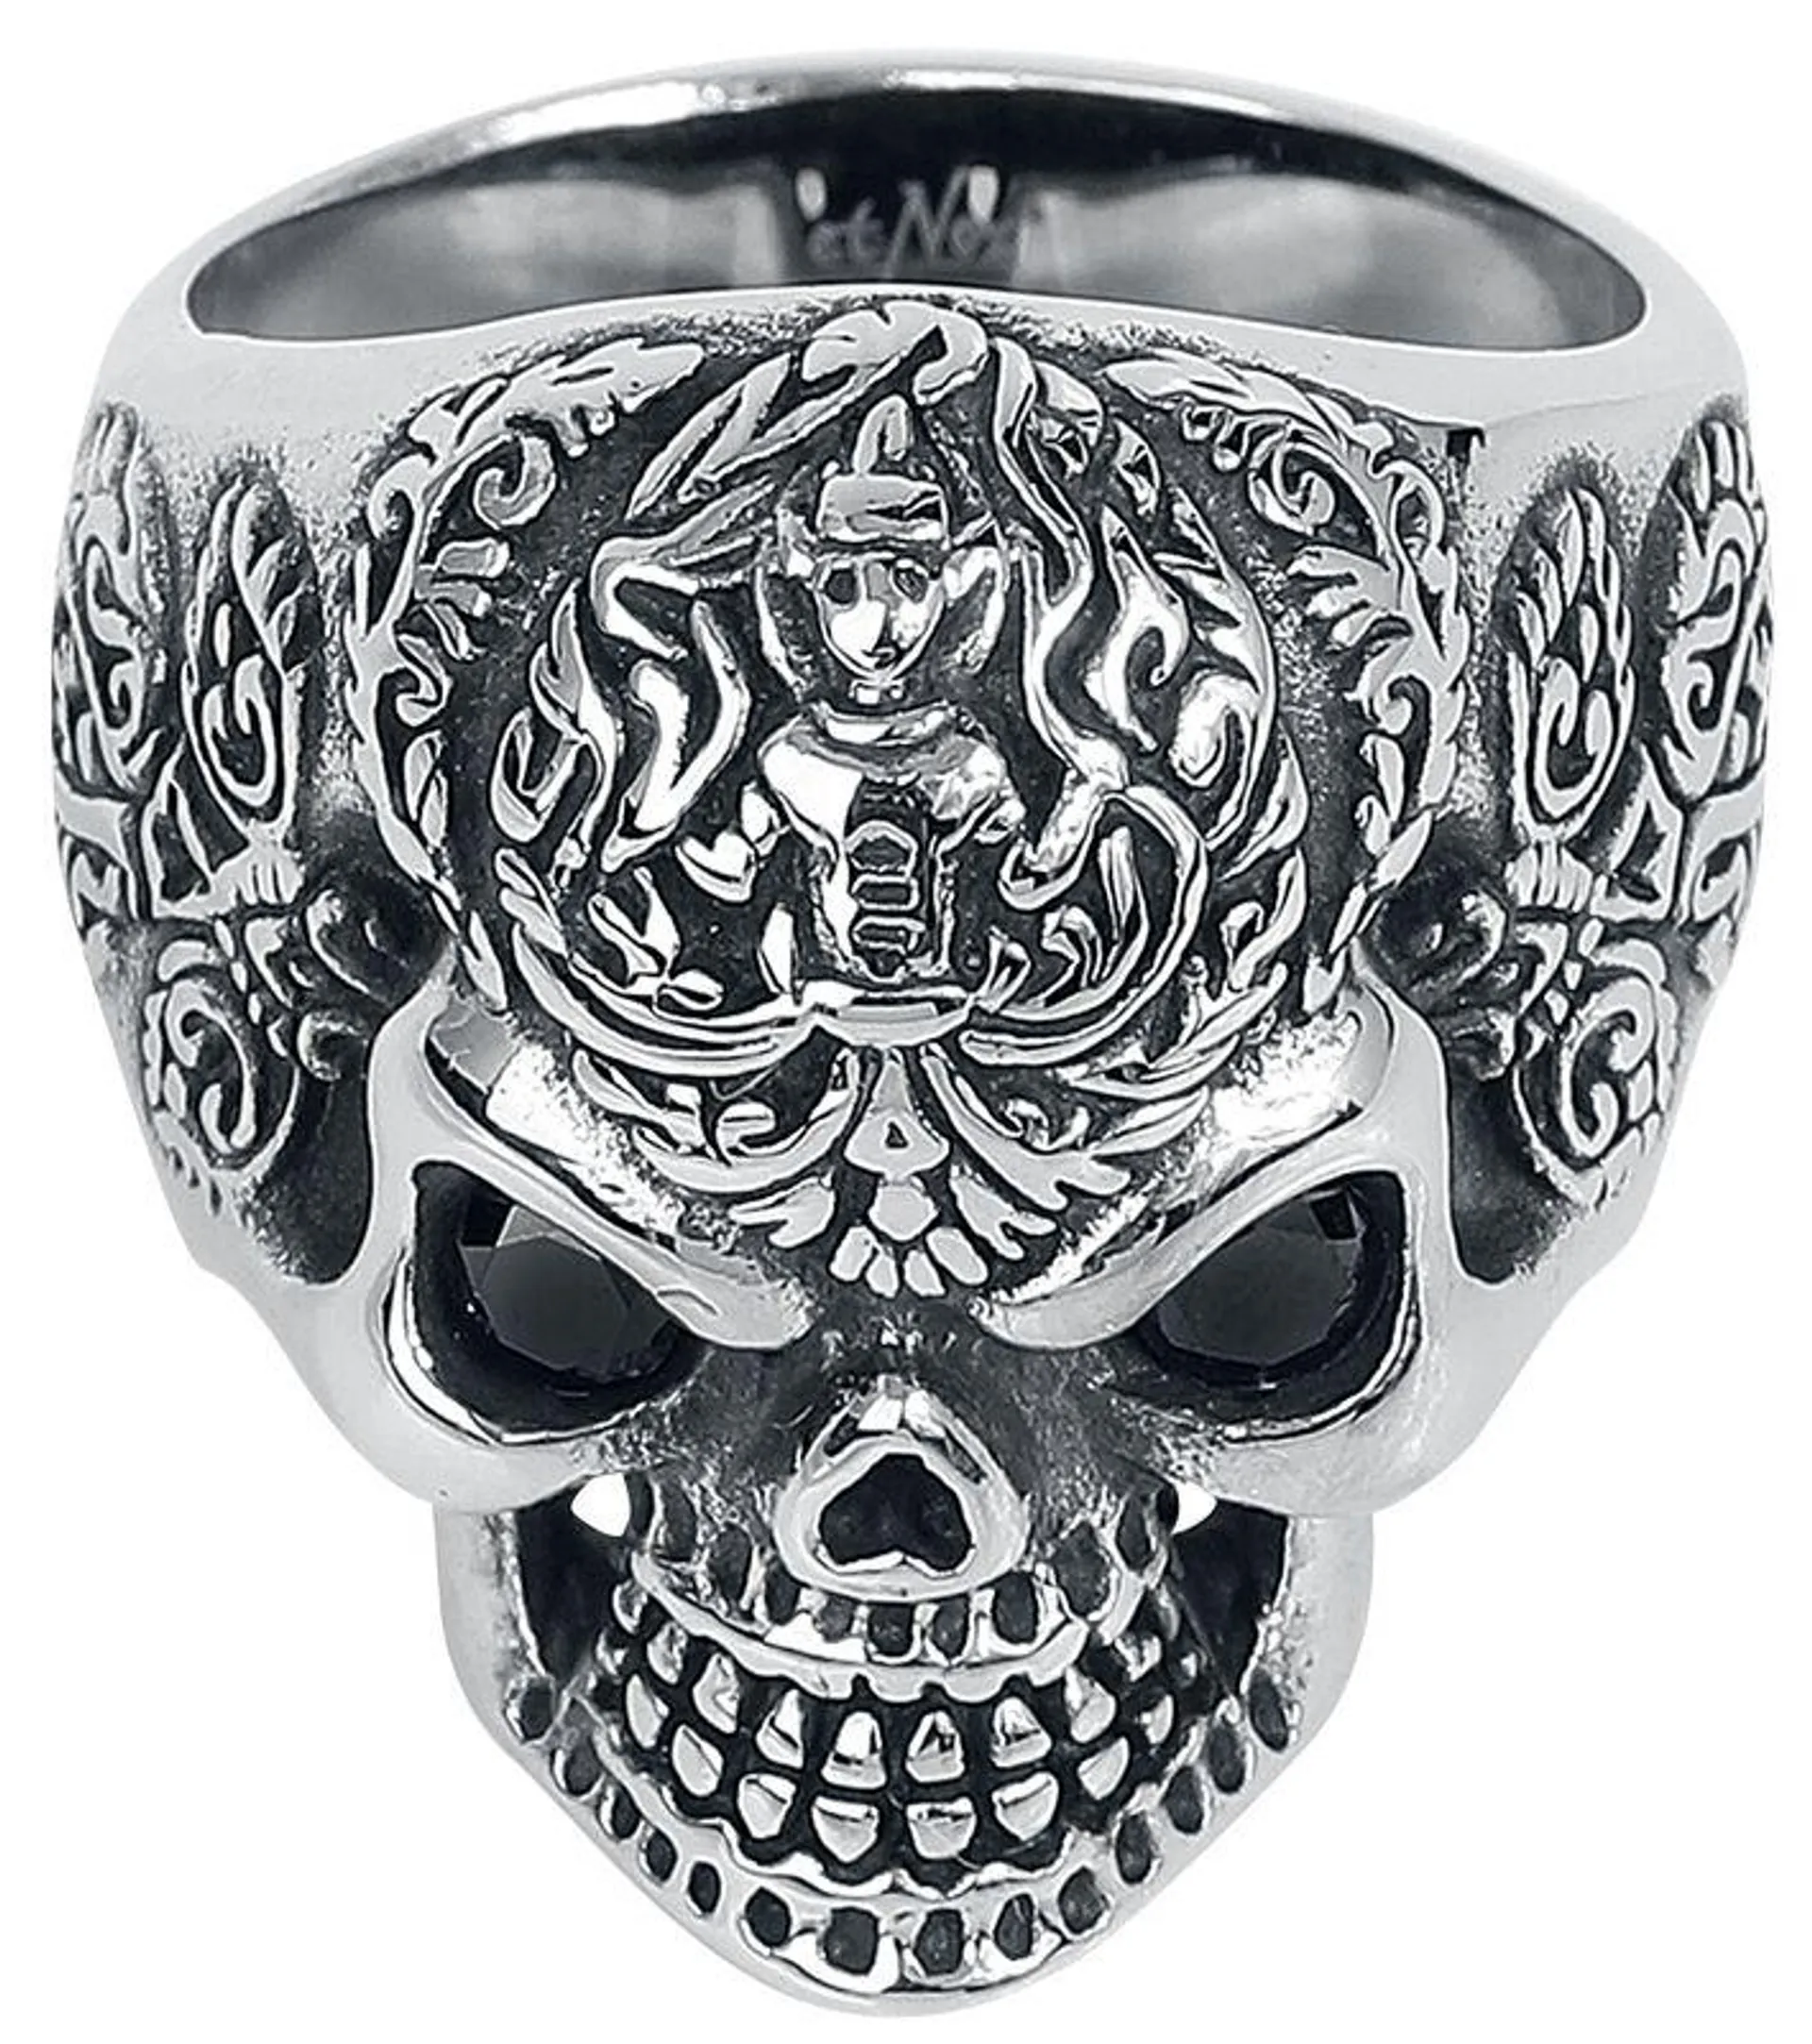 "Skull" Ring silberfarben von etNox hard and heavy